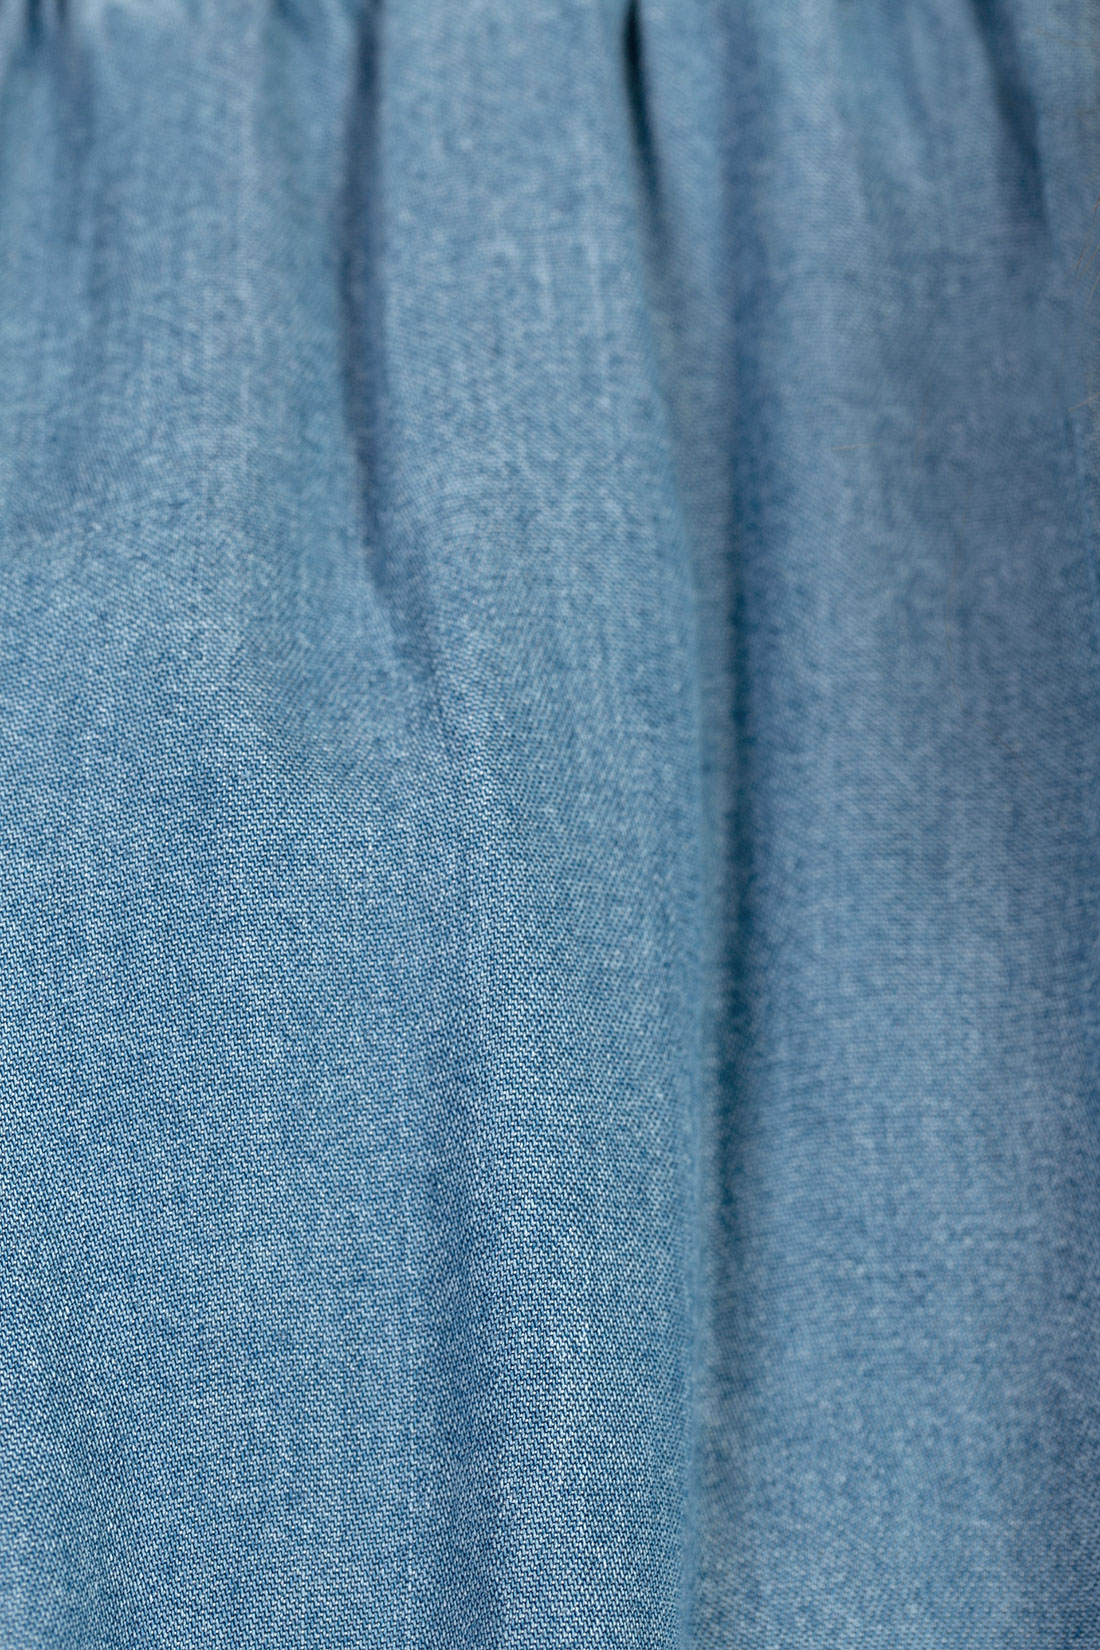 Платье с открытыми плечами из денима (арт. baon B457076), размер M, цвет light blue denim#голубой Платье с открытыми плечами из денима (арт. baon B457076) - фото 4